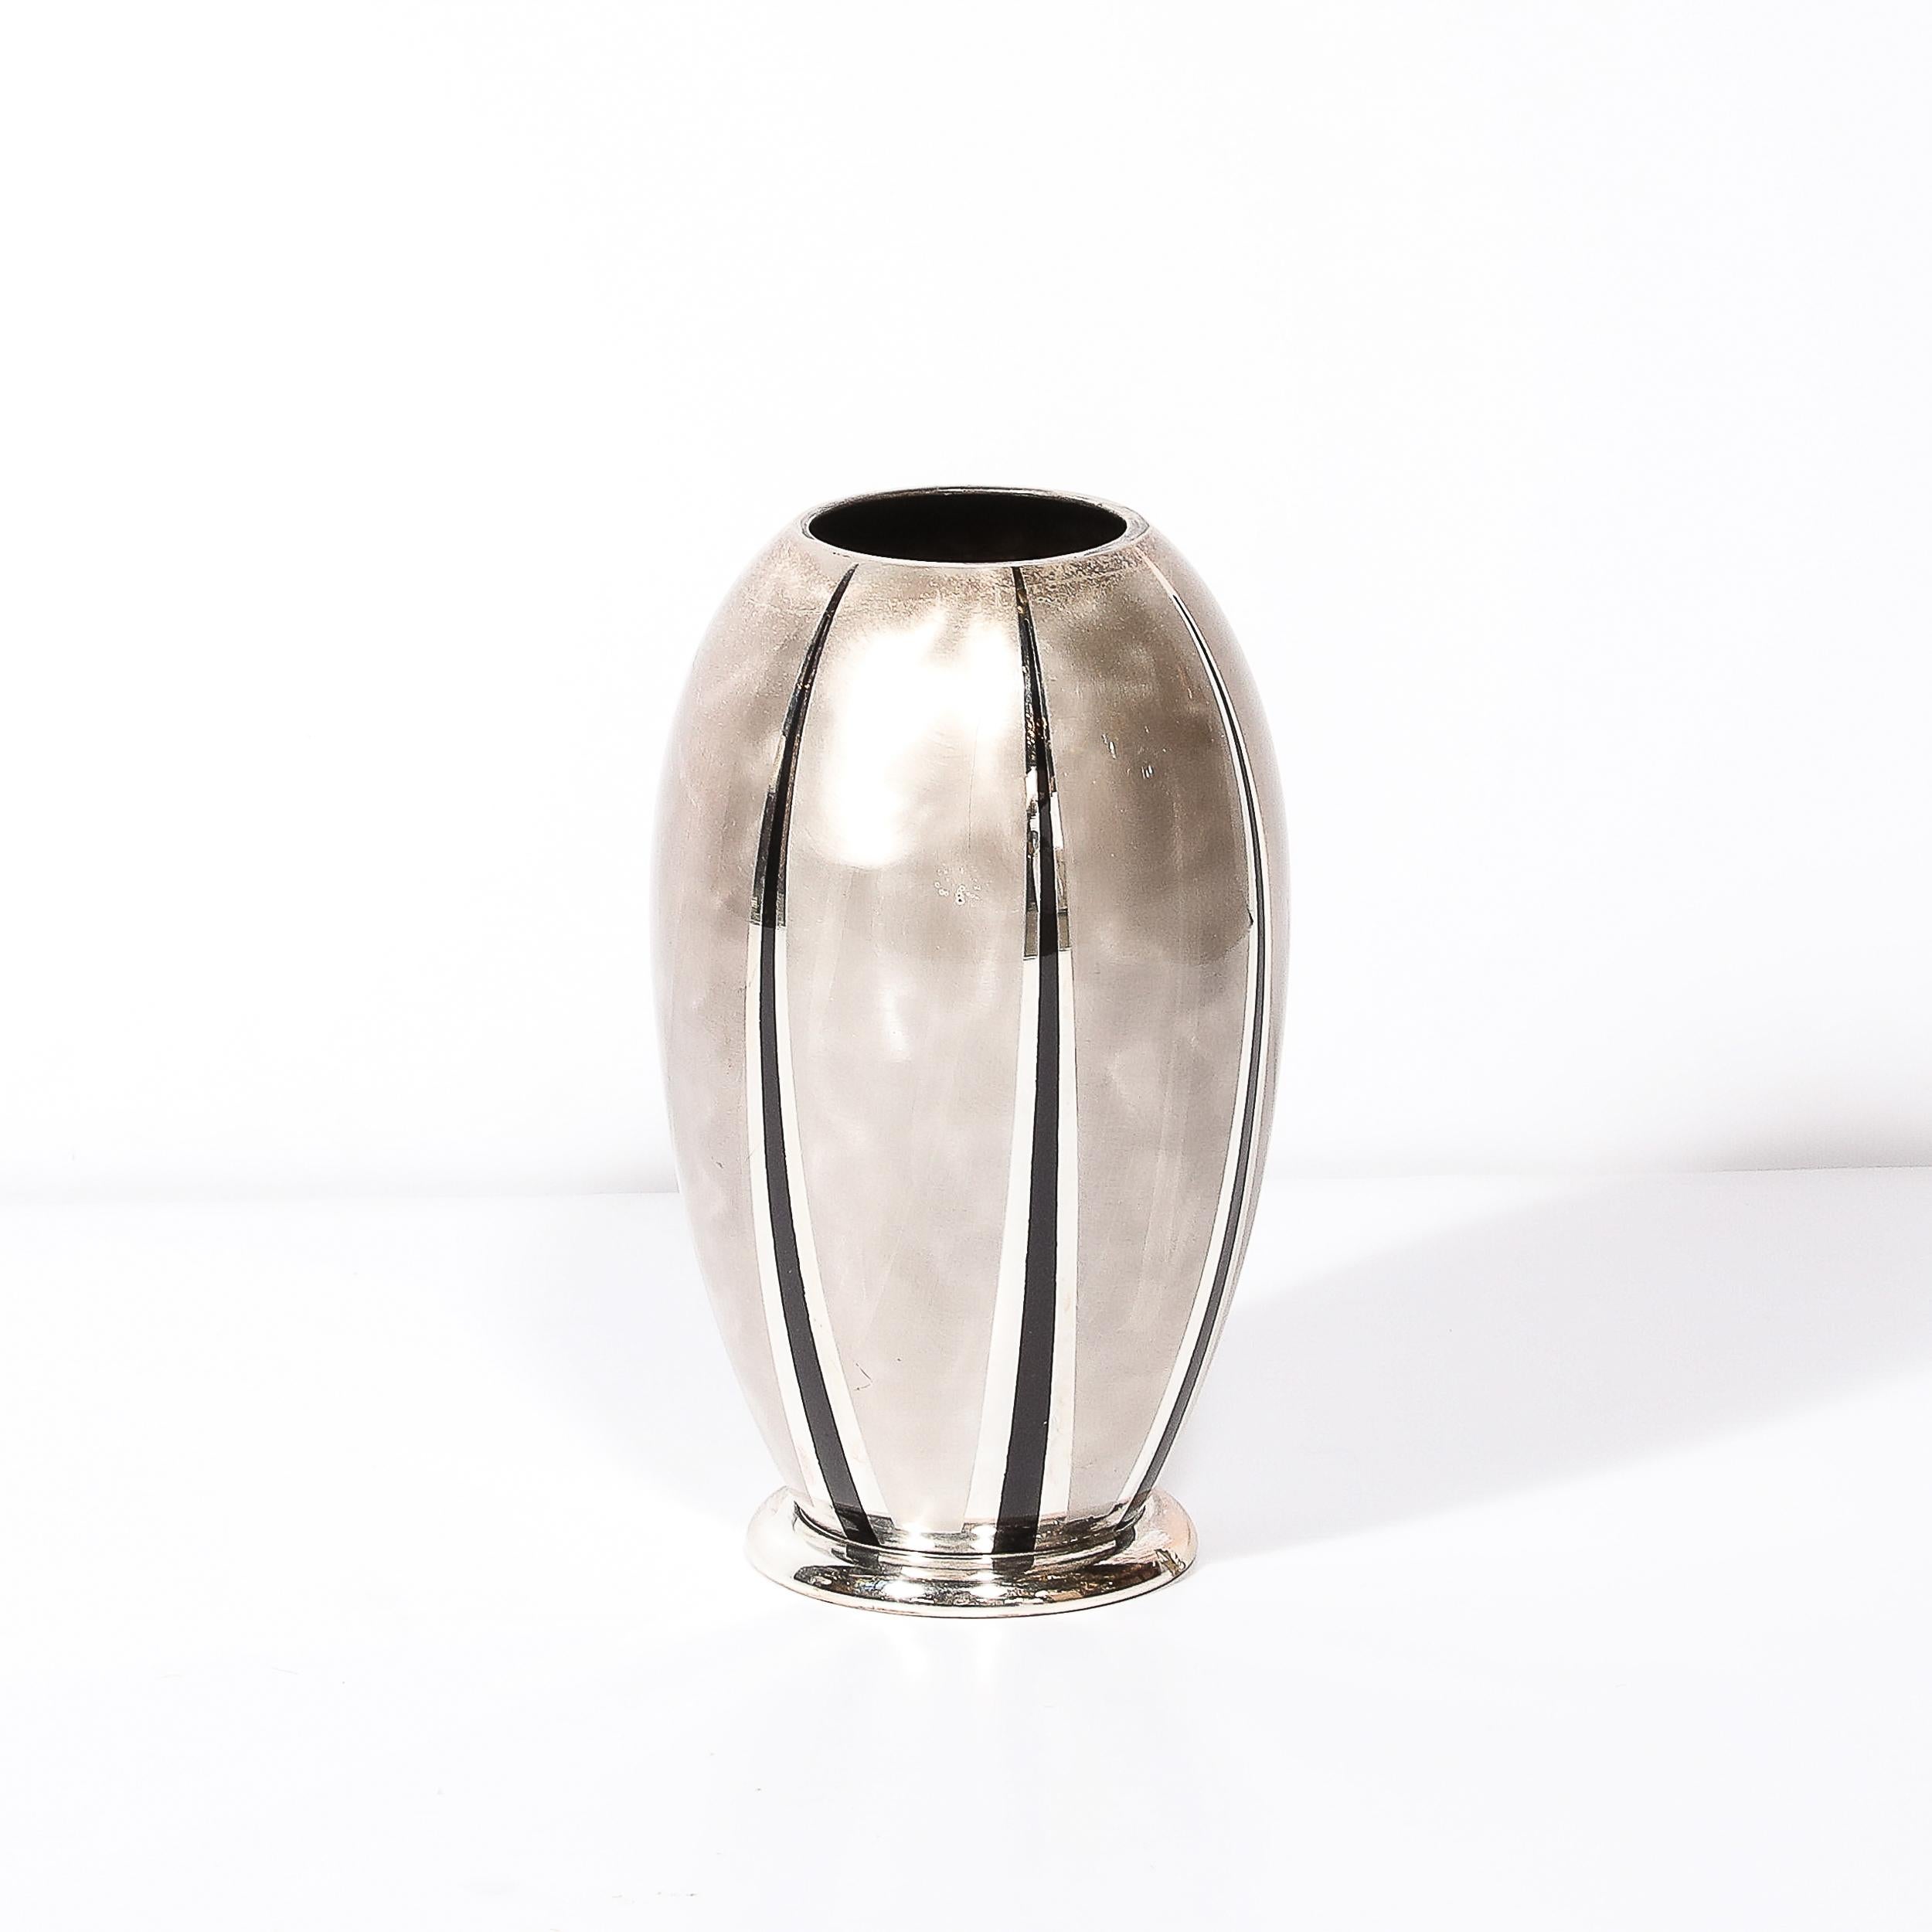 Diese gut ausgewogene und atemberaubend fertig Art Deco MF Ikora Textural Silver Plated Vase W / Jet Black Linear Detailing stammt aus Deutschland, Circa 1935. Die runde Komposition in Form einer Urne ruht auf einem zylindrischen Sockel und besticht